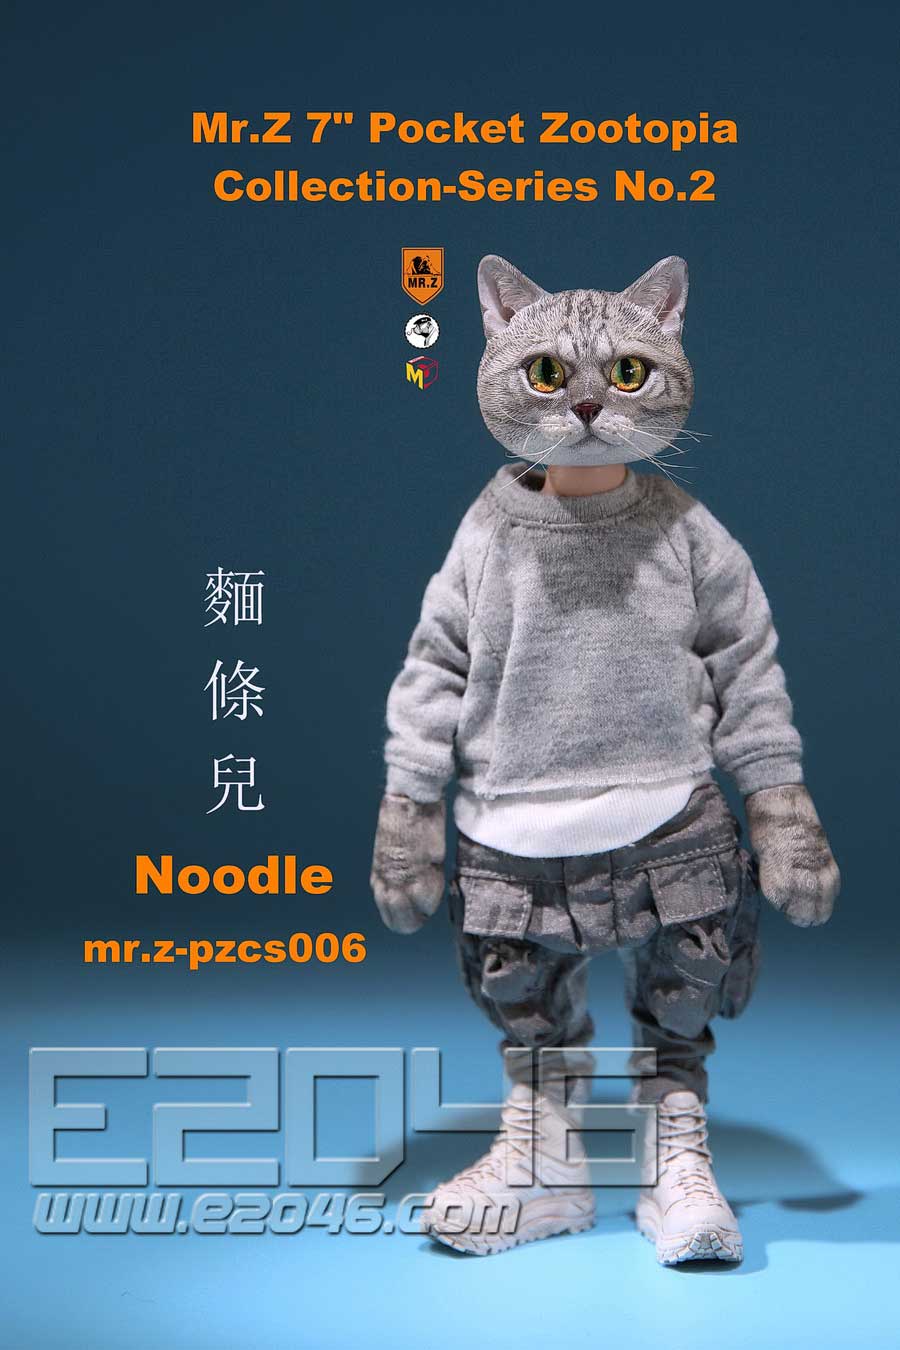 Noodle (DOLL)